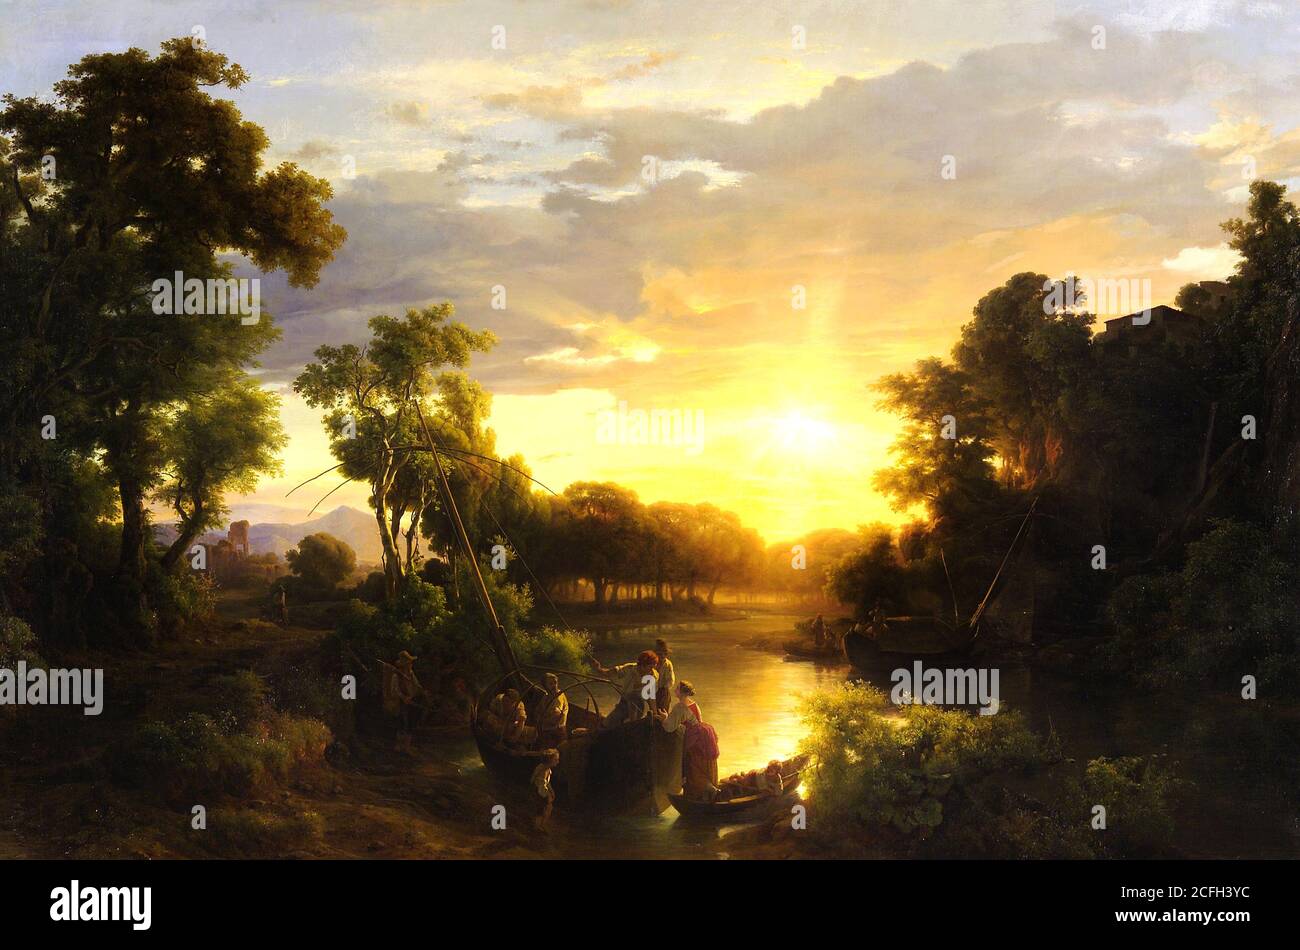 Marko Karoly, Italienische Landschaften bei Sonnenuntergang, Fischer 1851 Öl auf Leinwand, Ungarische Nationalgalerie, Budapest, Ungarn. Stockfoto